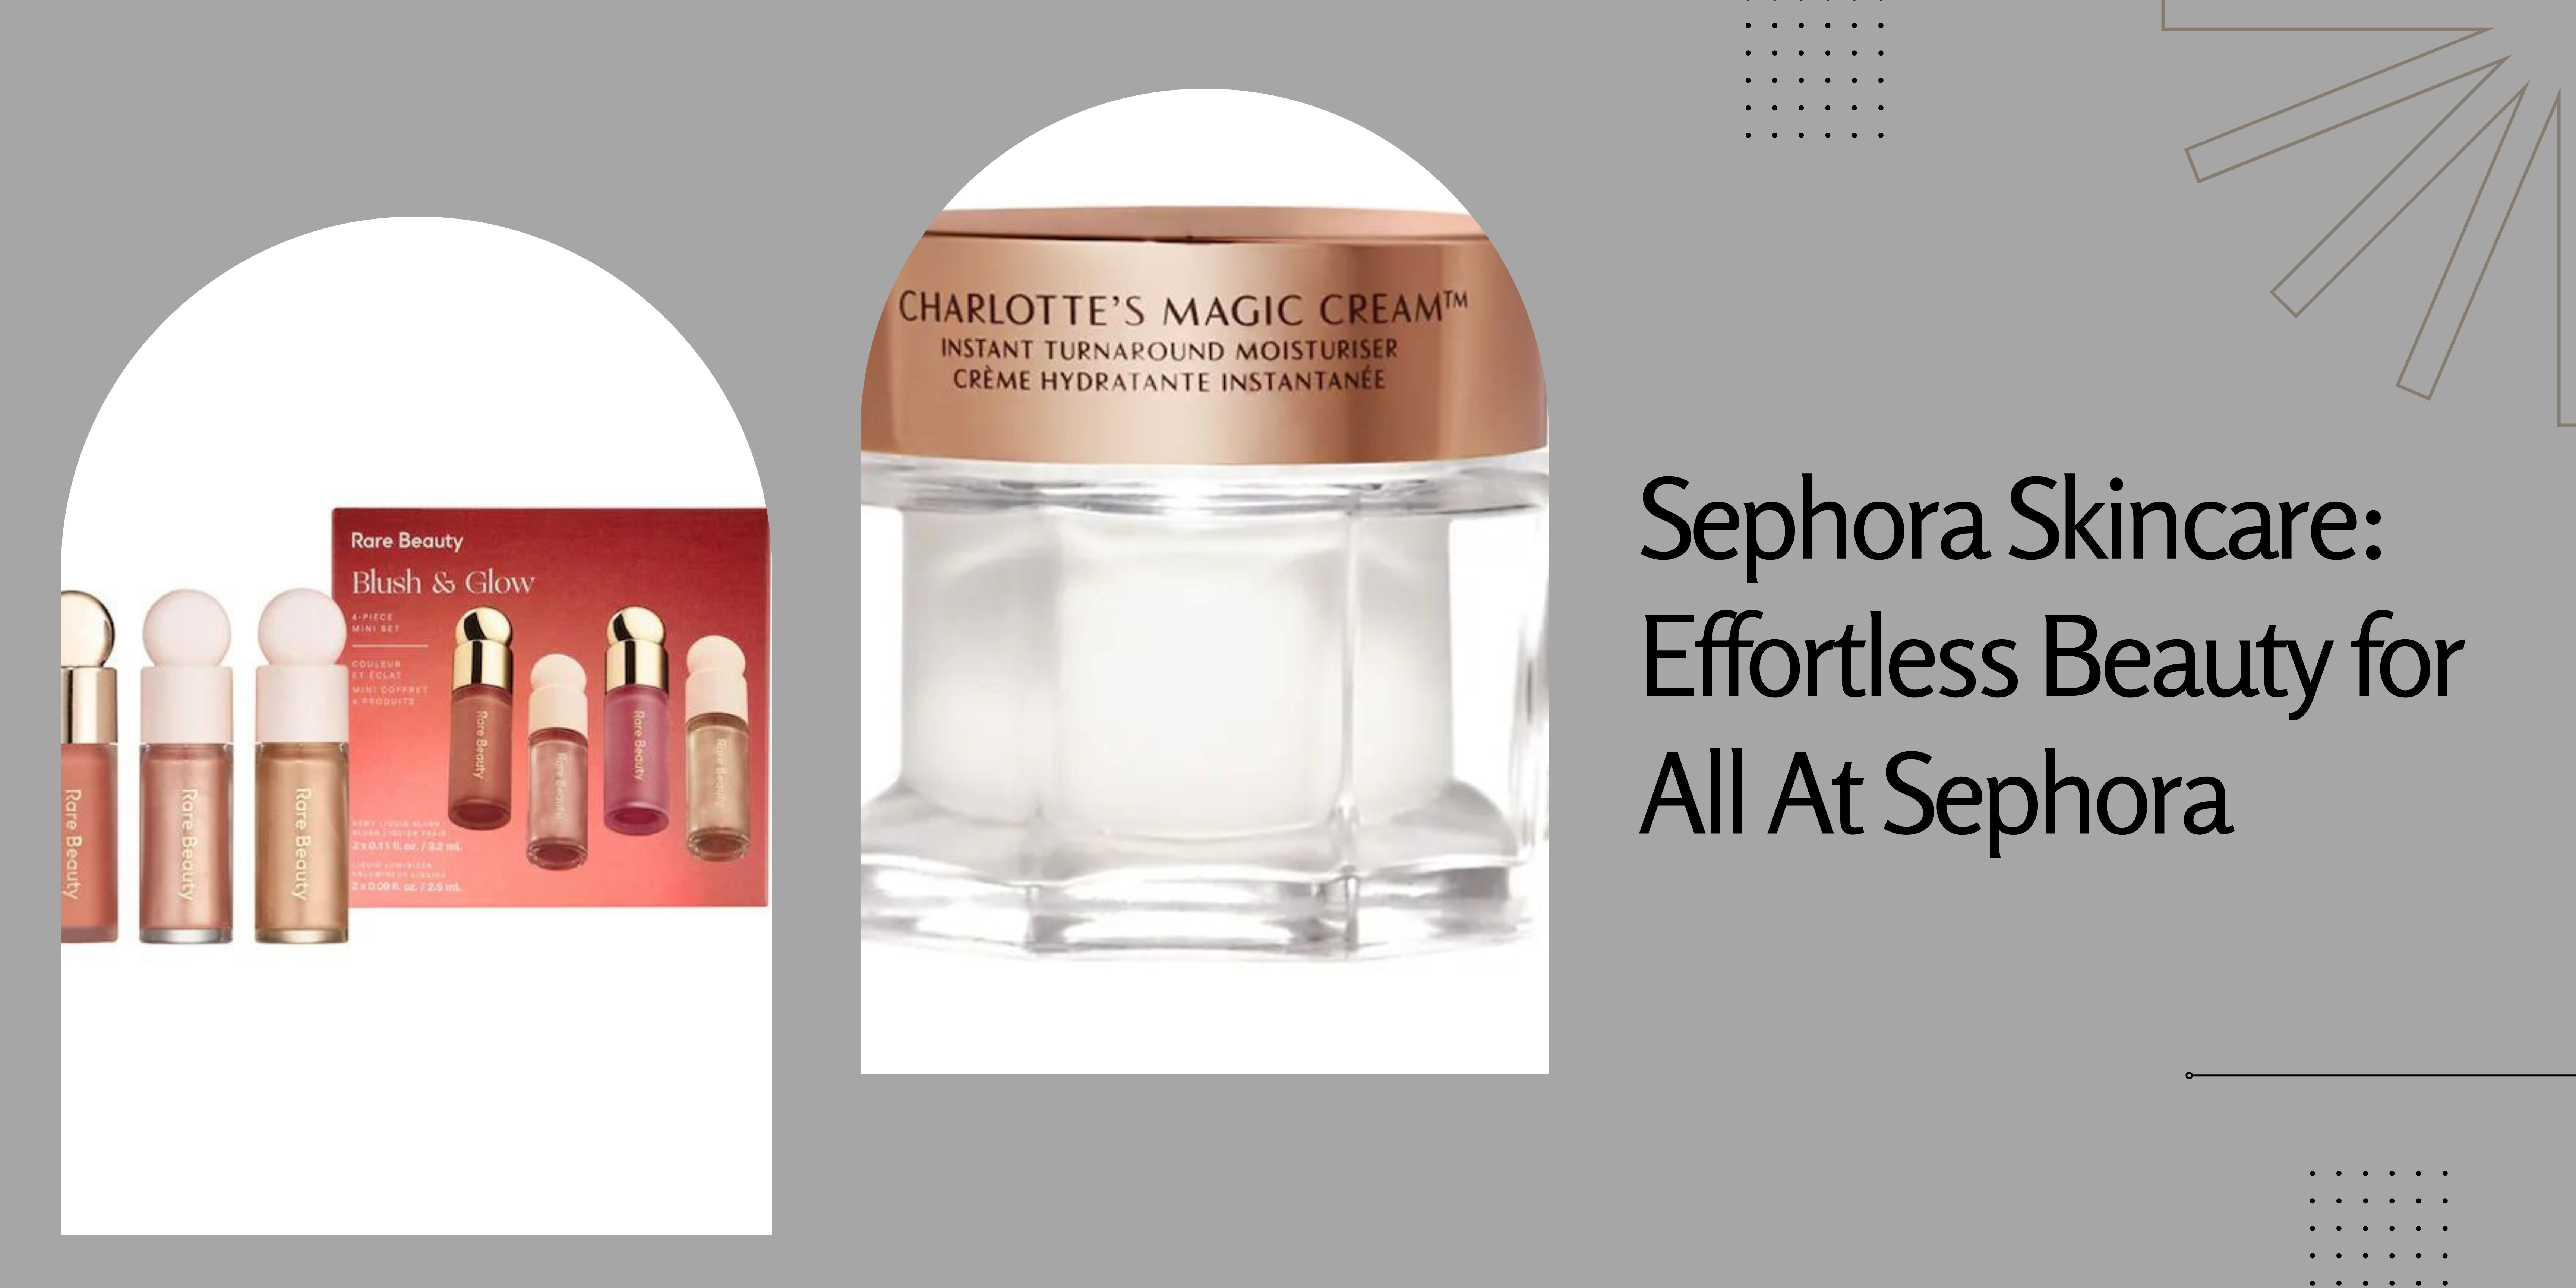 Sephora Skincare: Effortless Beauty for All